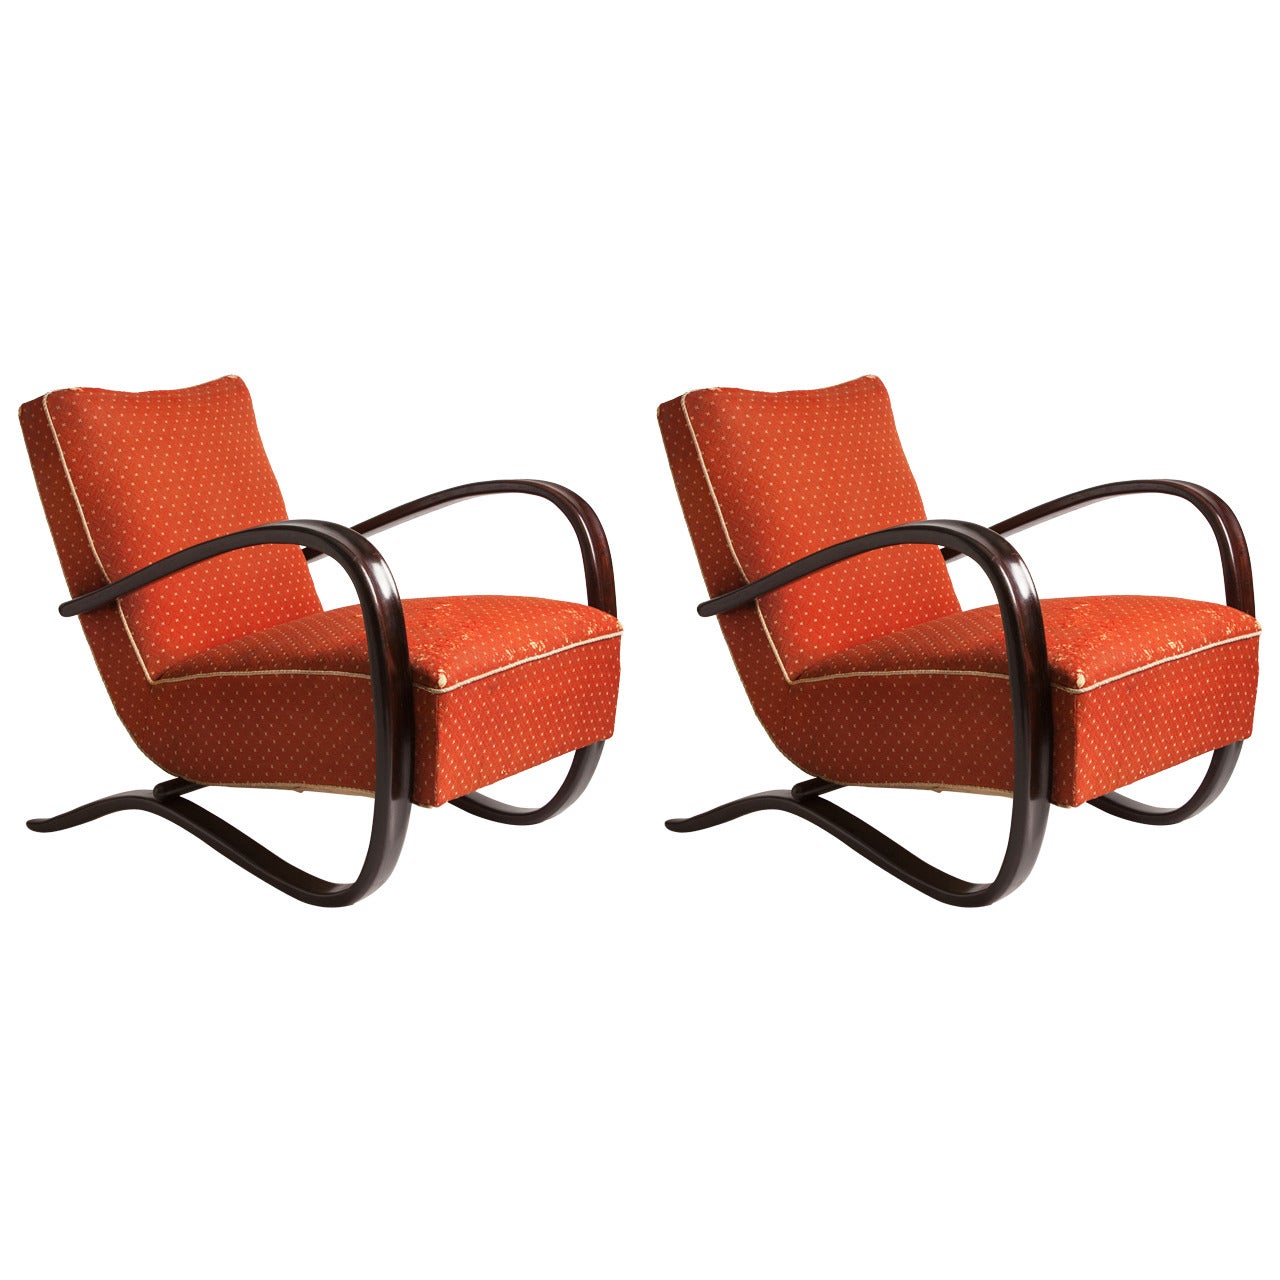 Jindrich Halabala "H269" Chairs